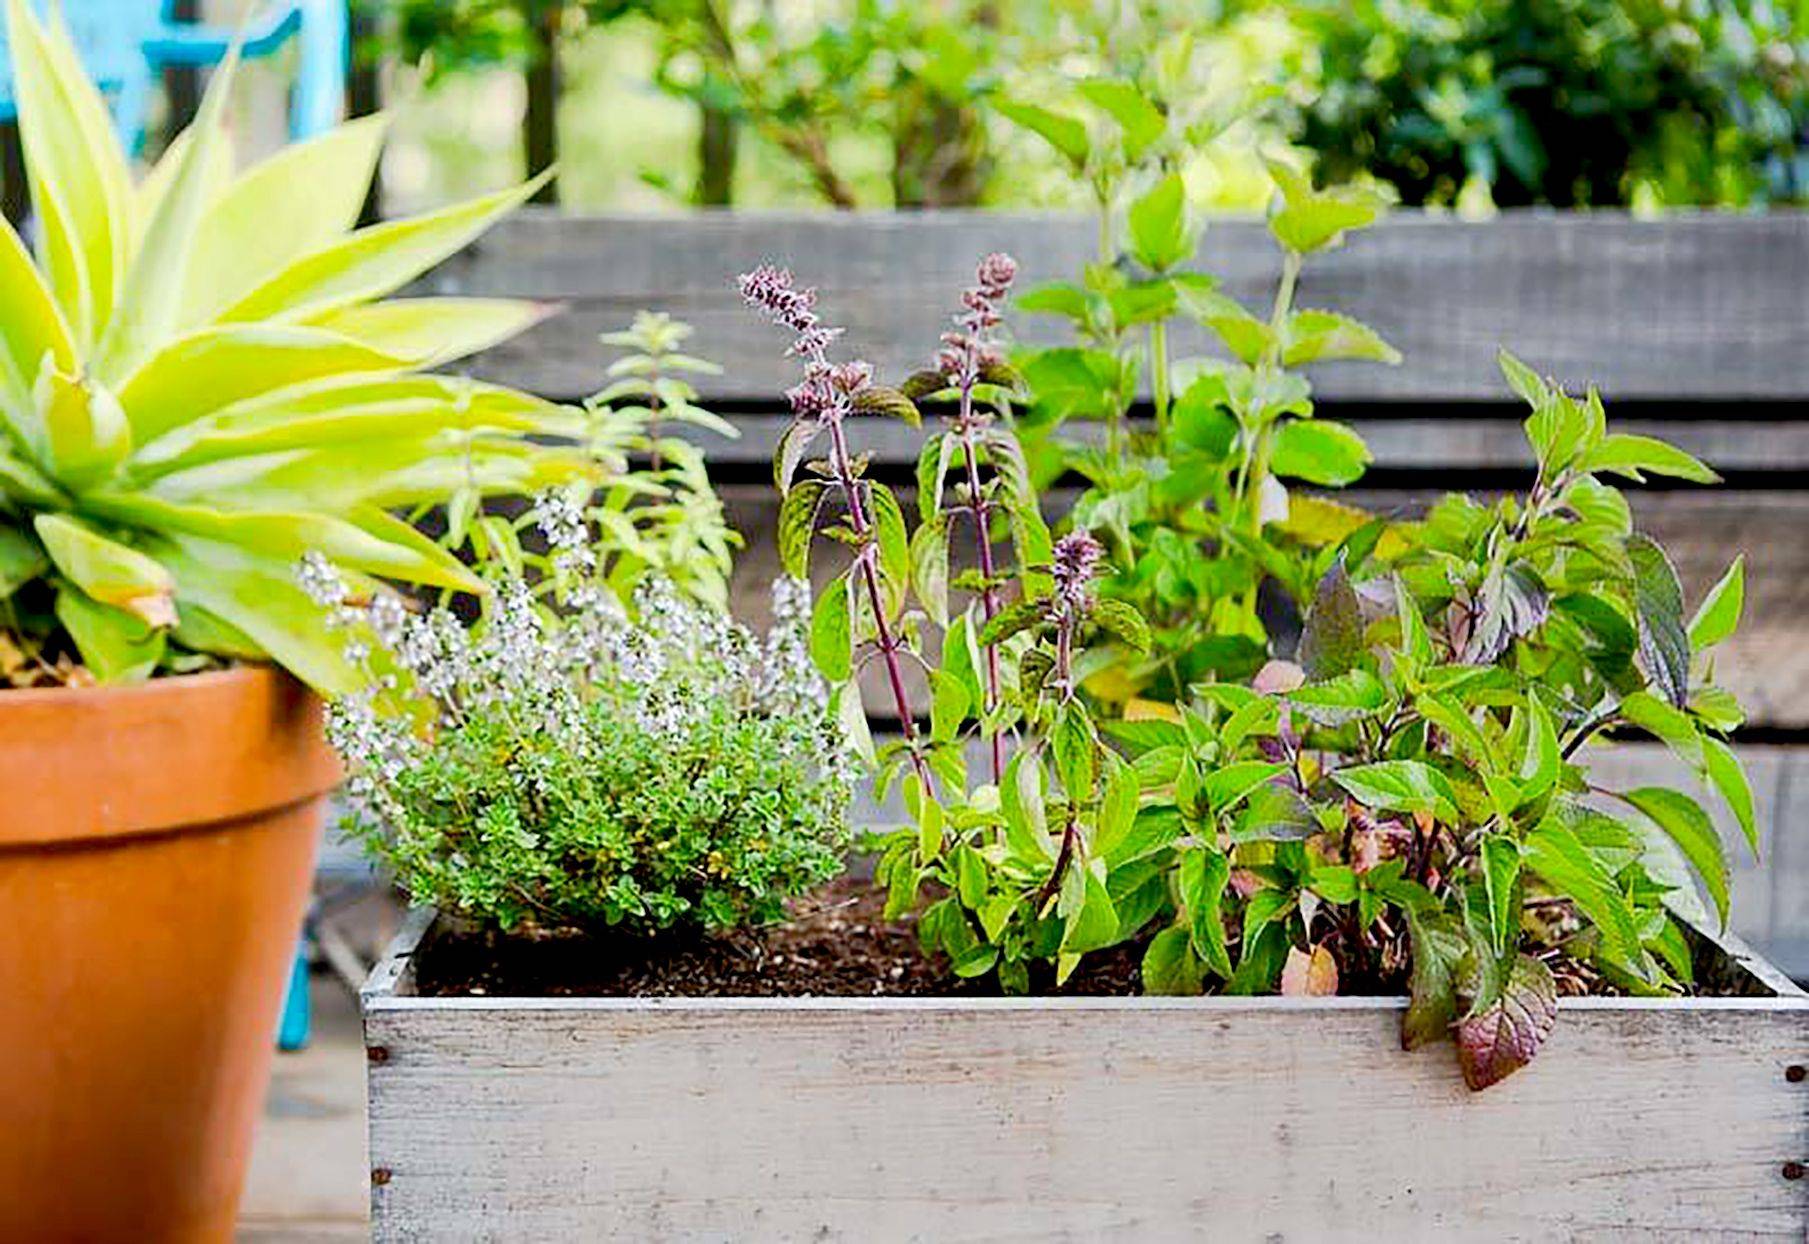 Best Indoor Herb Gardens